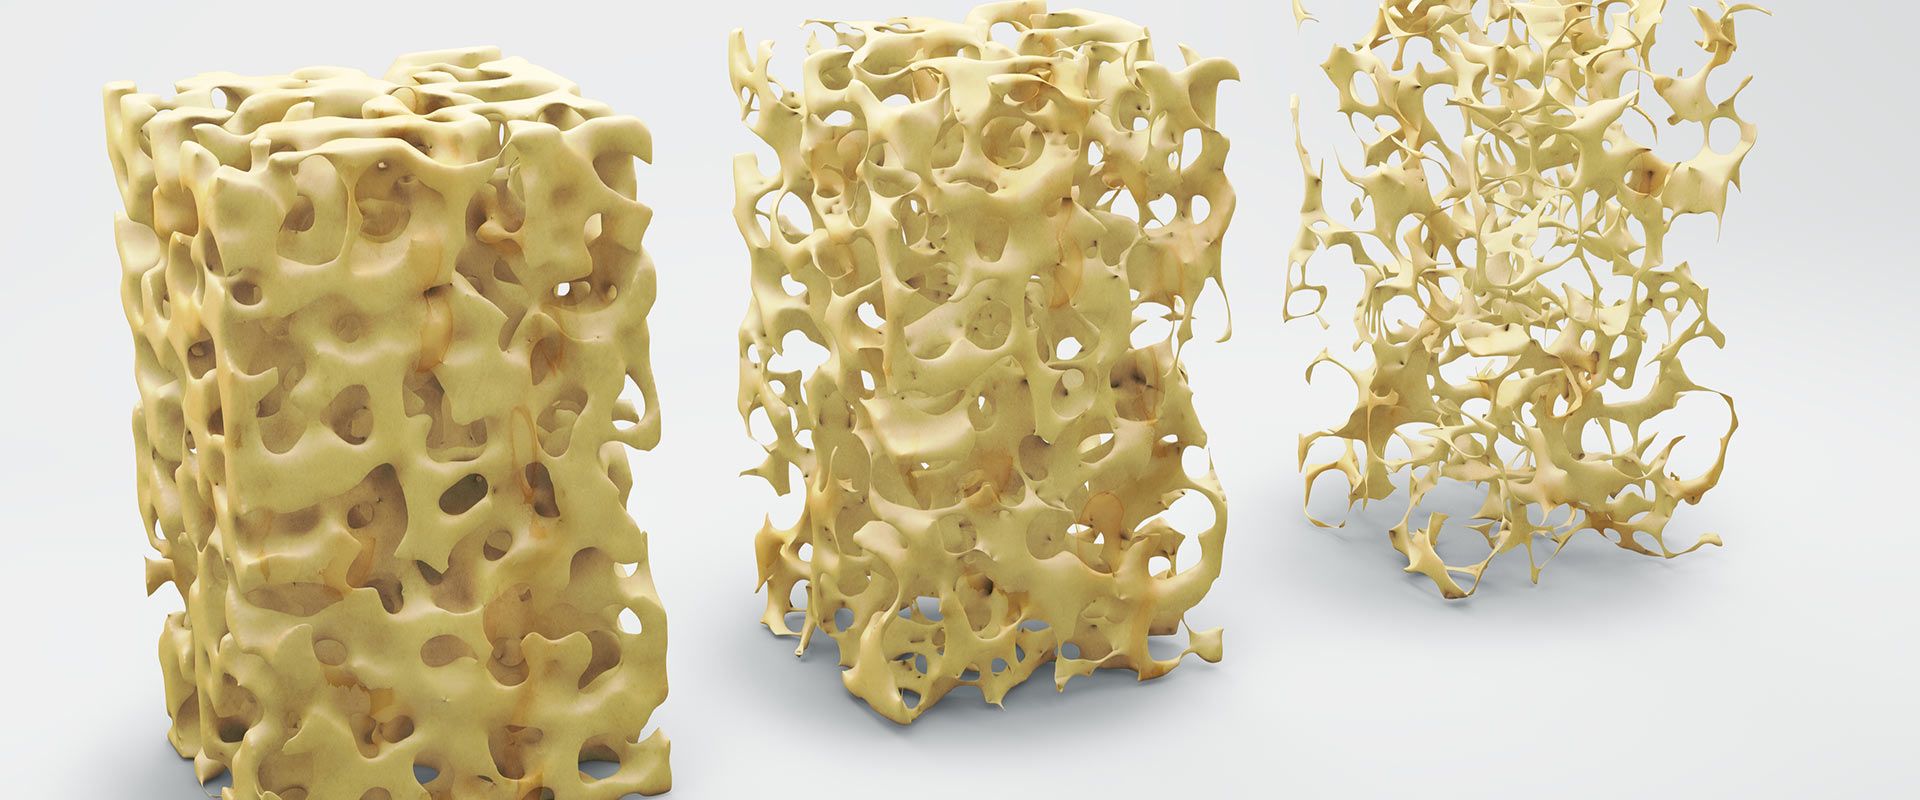 Bild mit Knochengewebe als Beispiel für Osteoporose